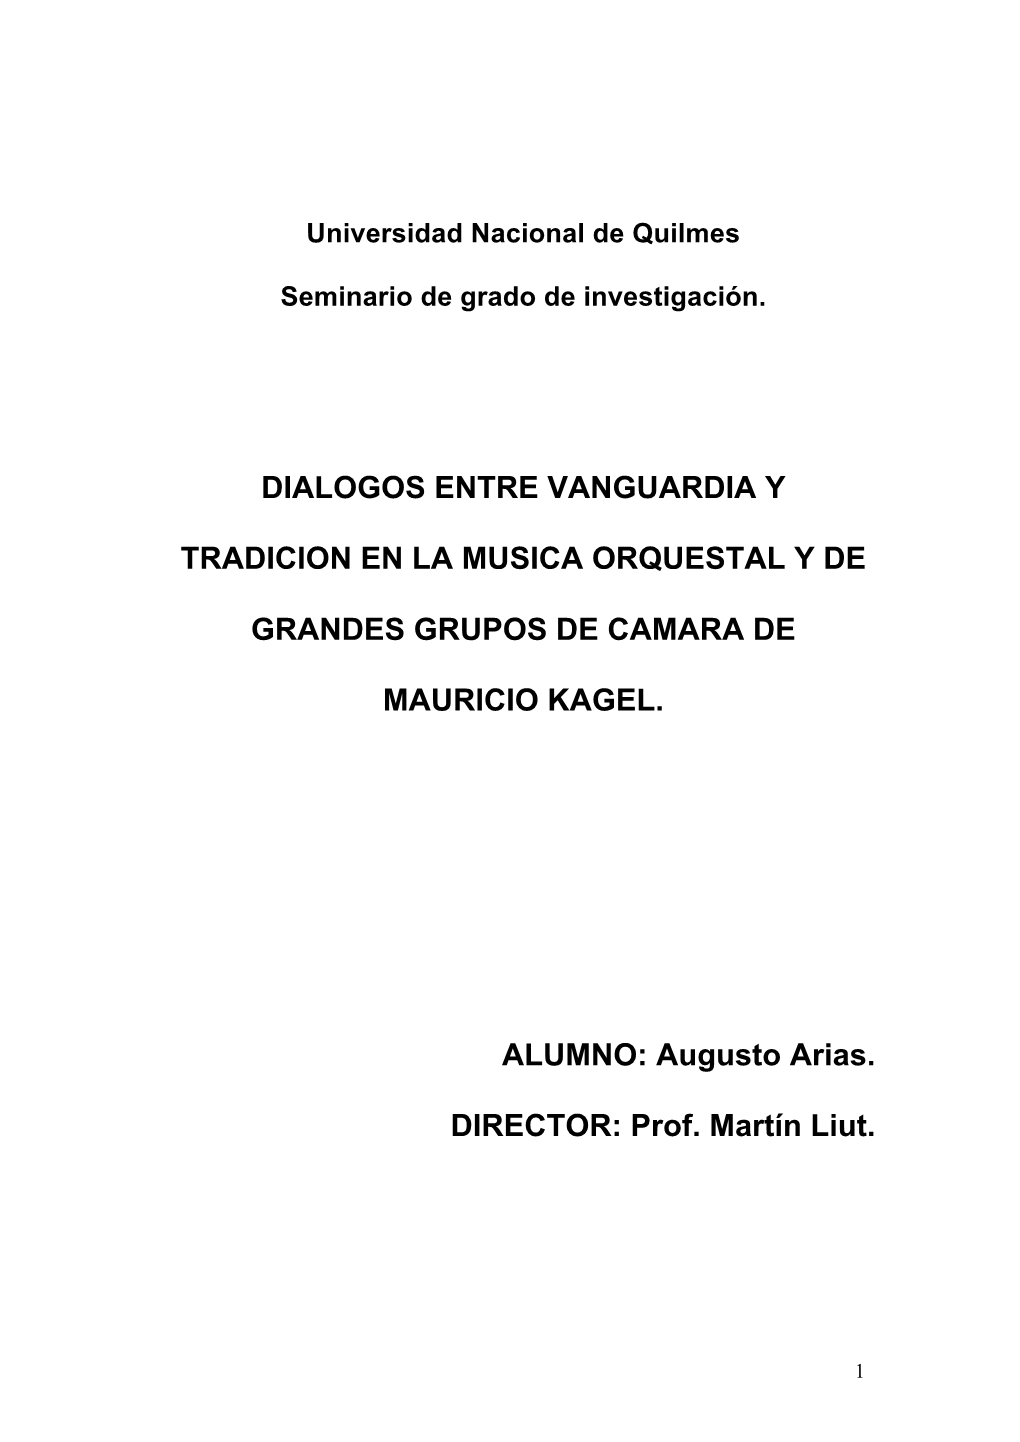 Dialogos Entre Vanguardia Y Tradicion En La Musica